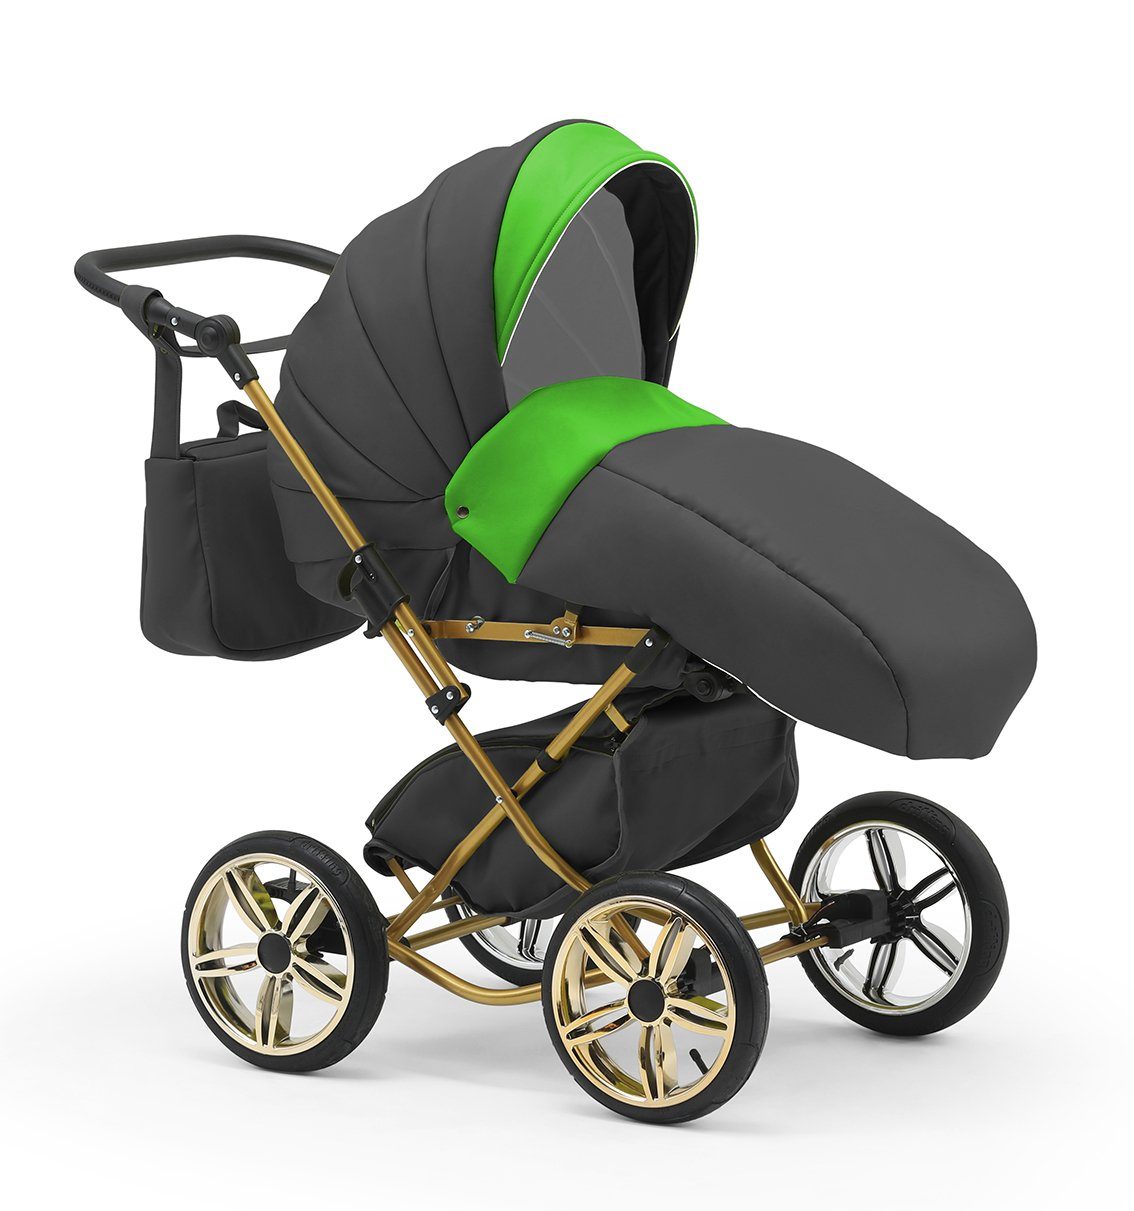 babies-on-wheels Kombi-Kinderwagen Jahre in bis 30 - in von 1 Sorento 11 2 Designs Geburt 4 - Grün-Grau-Schwarz Teile